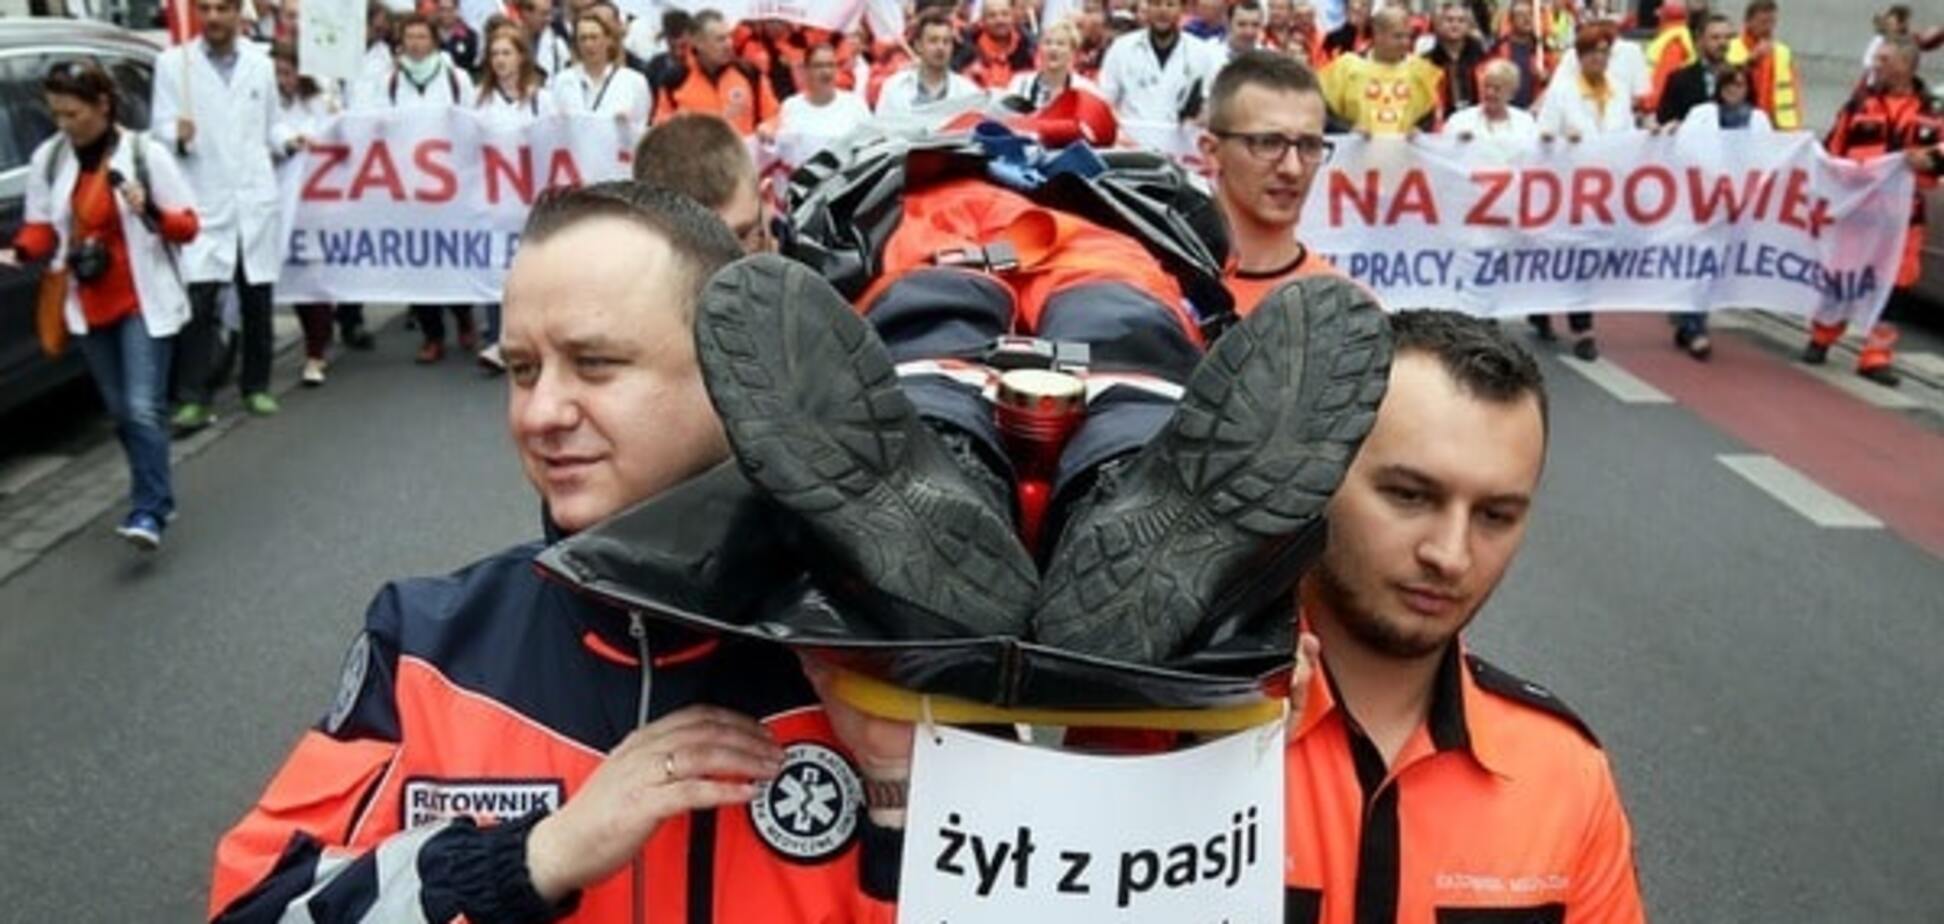 В Польше тысячи людей вышли на антиправительственный митинг. Опубликованы фото